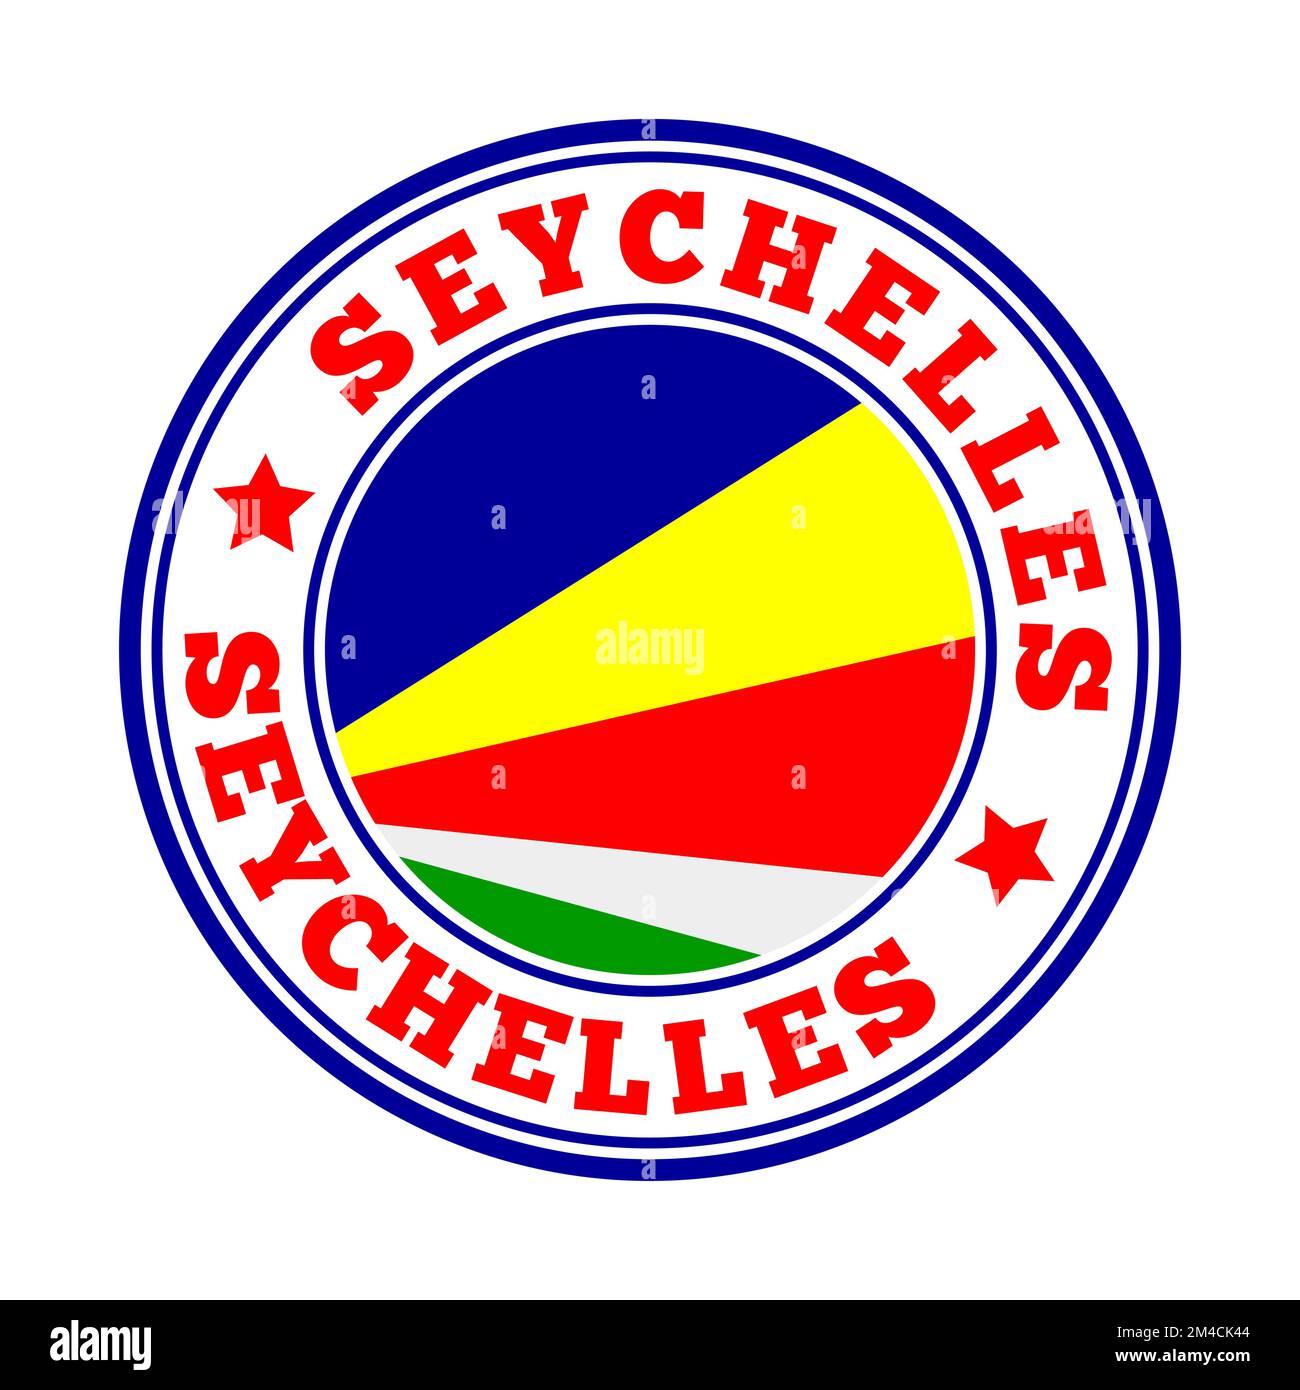 Panneau Seychelles. Logo rond de pays avec drapeau des Seychelles. Illustration vectorielle. Illustration de Vecteur